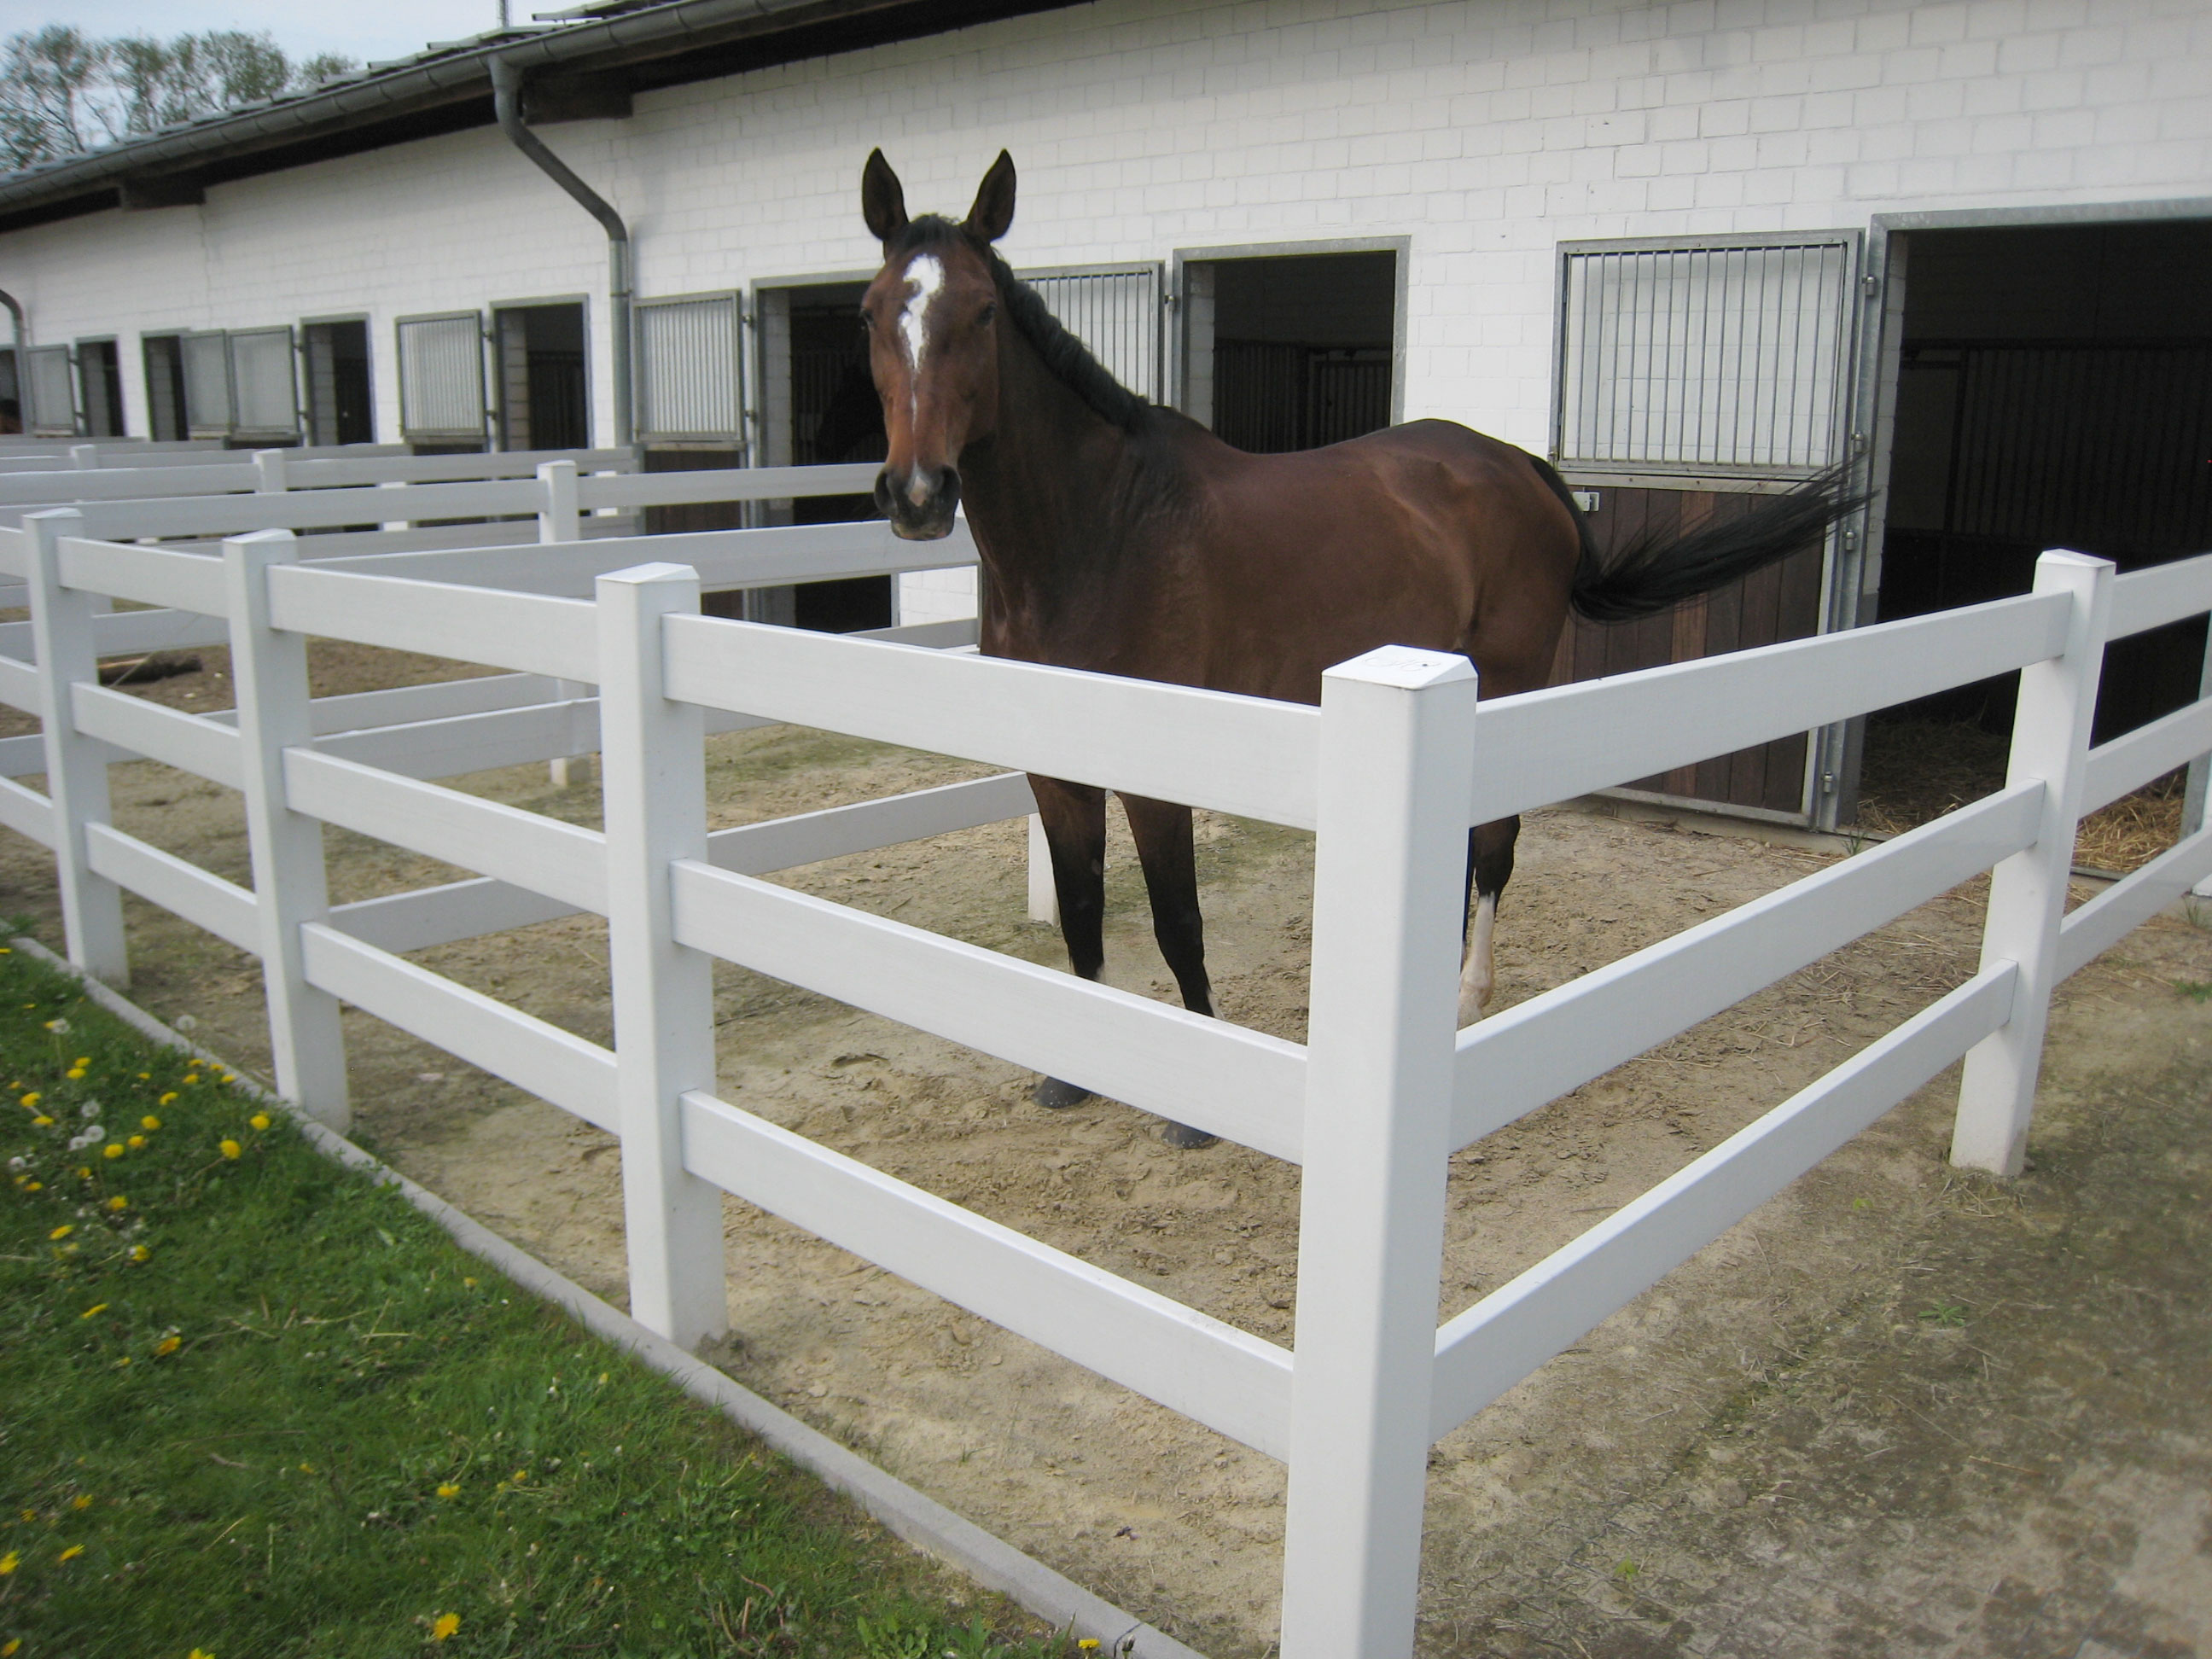 Ein braunes Pferd steht in seinem eigenen kleinen Gehege neben dem Stall. Das Gehege besteht aus einem weißen Kunststoffpferdezaun.